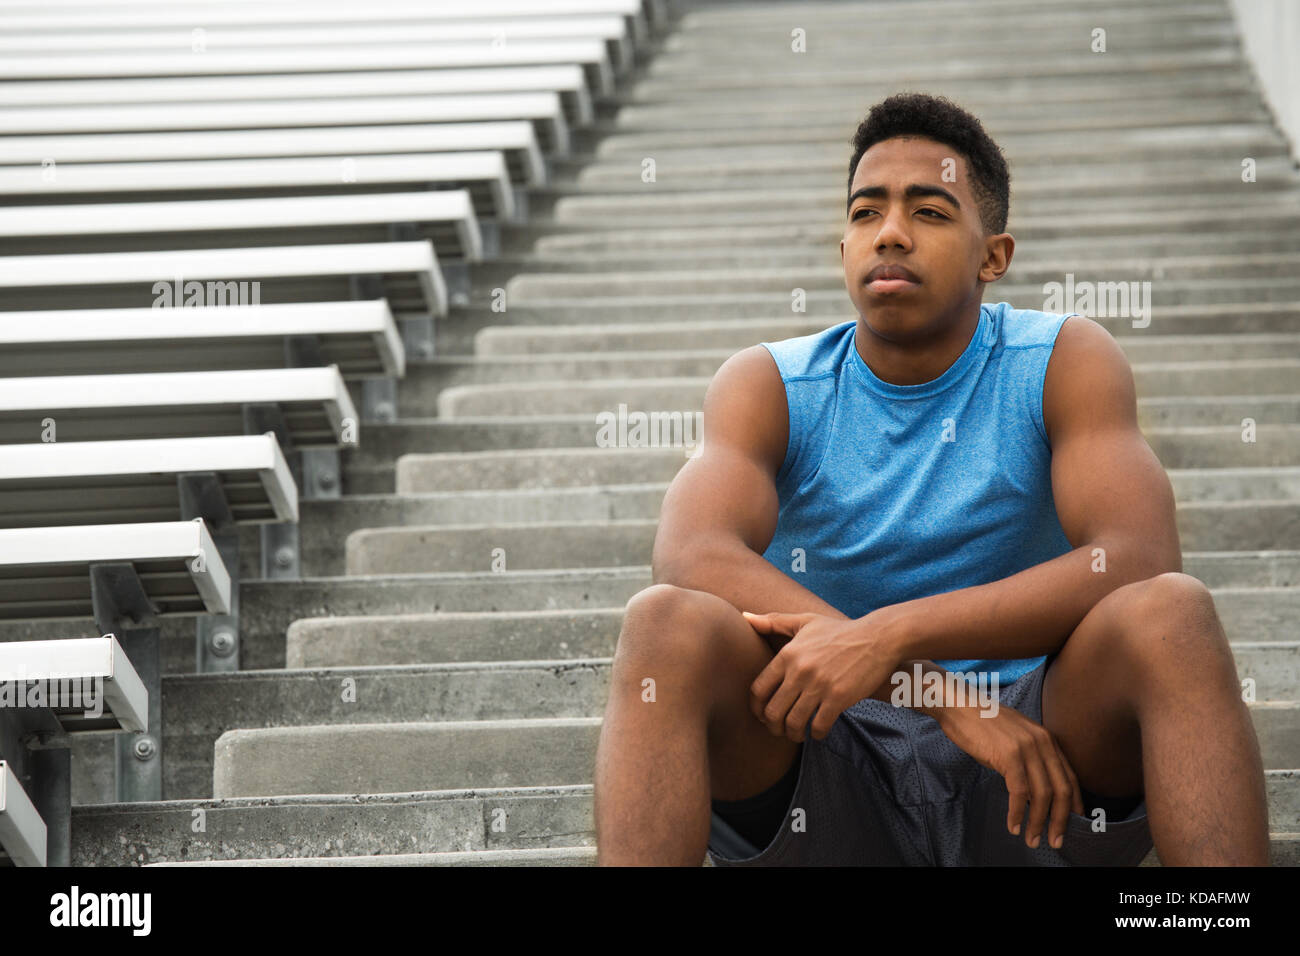 Junge afrikanische Amerian jugendlicher Sportler denken über seine Zukunft. Stockfoto